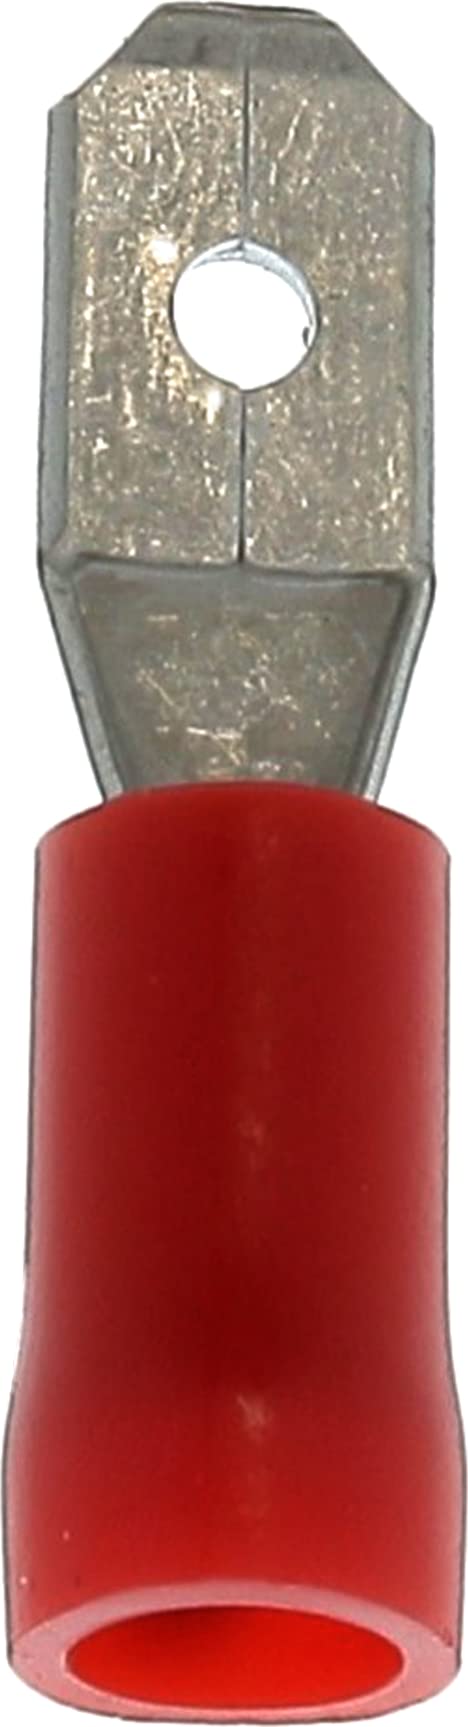 Restagraf Roter Flachstecker, vorisoliert, männlich, verstärkt, in Blisterverpackung, 4,8 mm x 0,8 mm, 0,3 bis 1,5 mm², 5 Stück von Restagraf